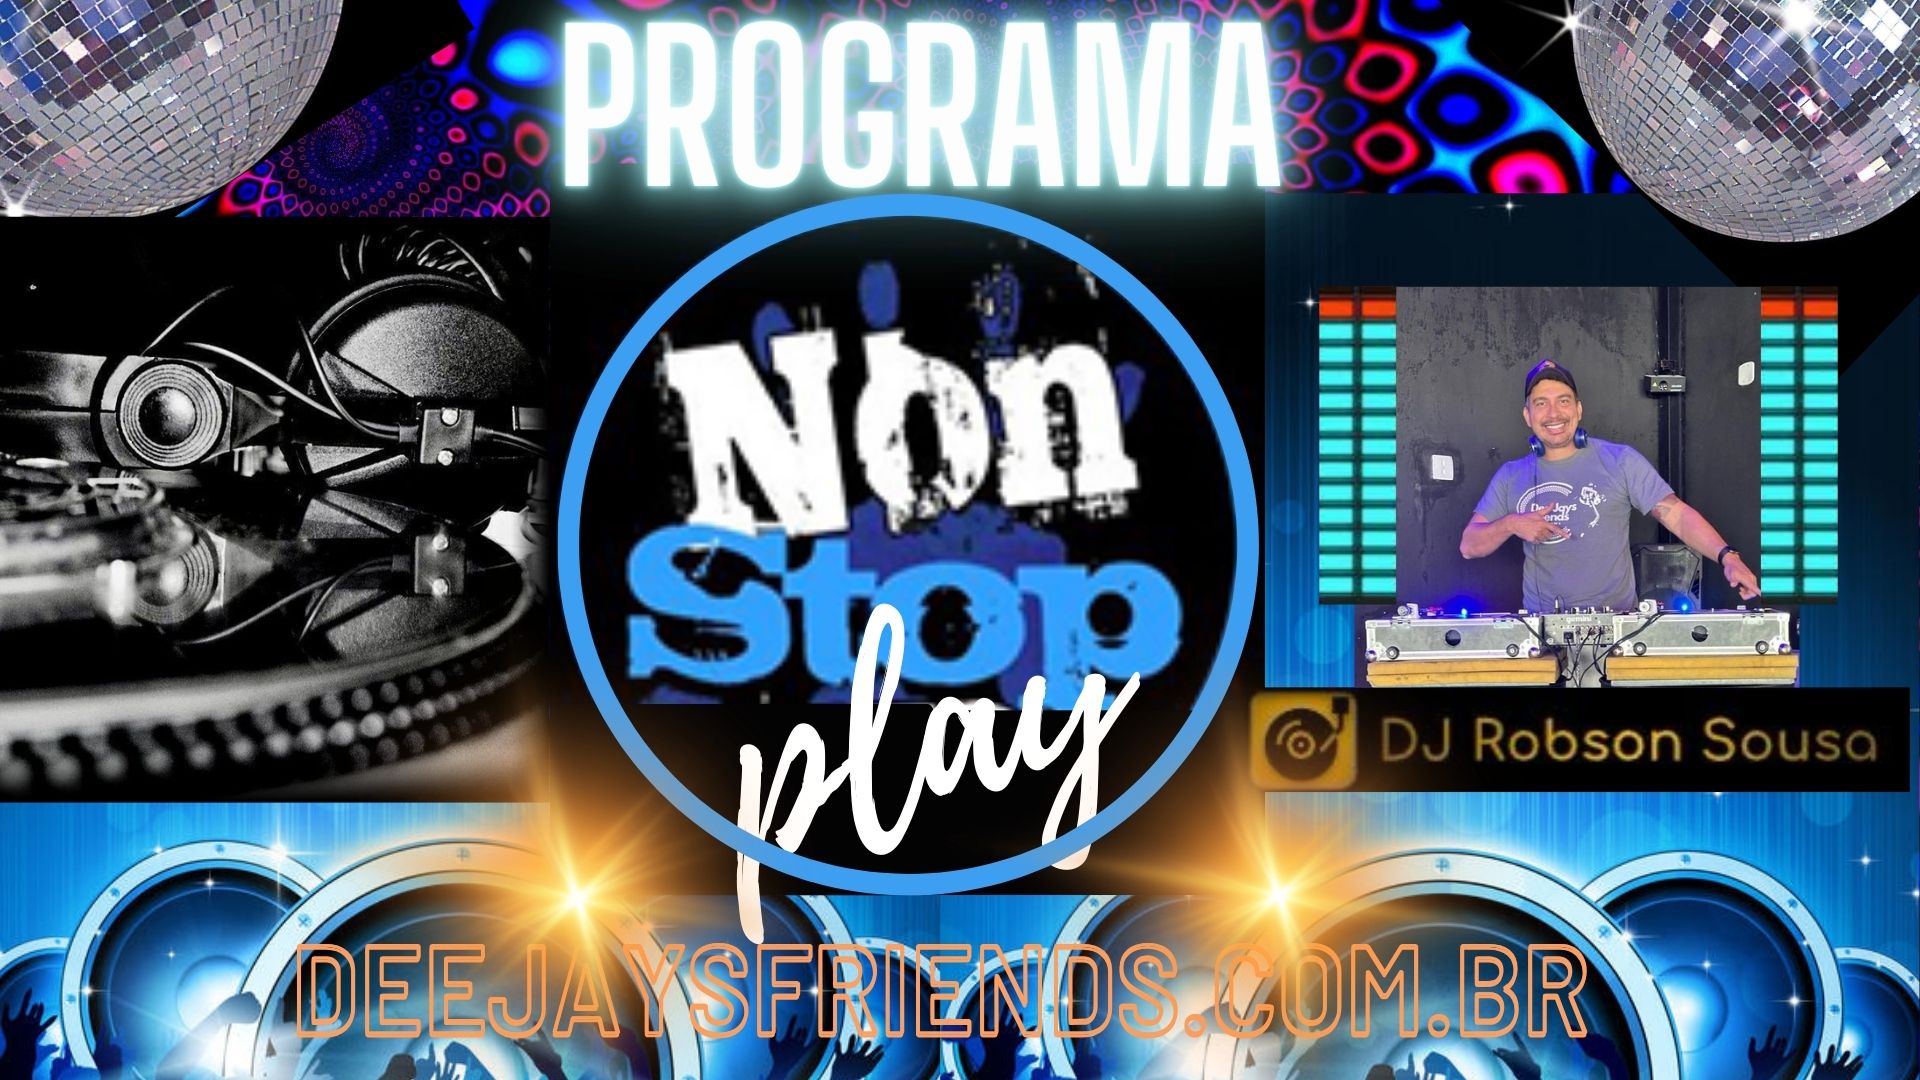 NOW STOP PLAY - DJ Robson de Sousa aaa